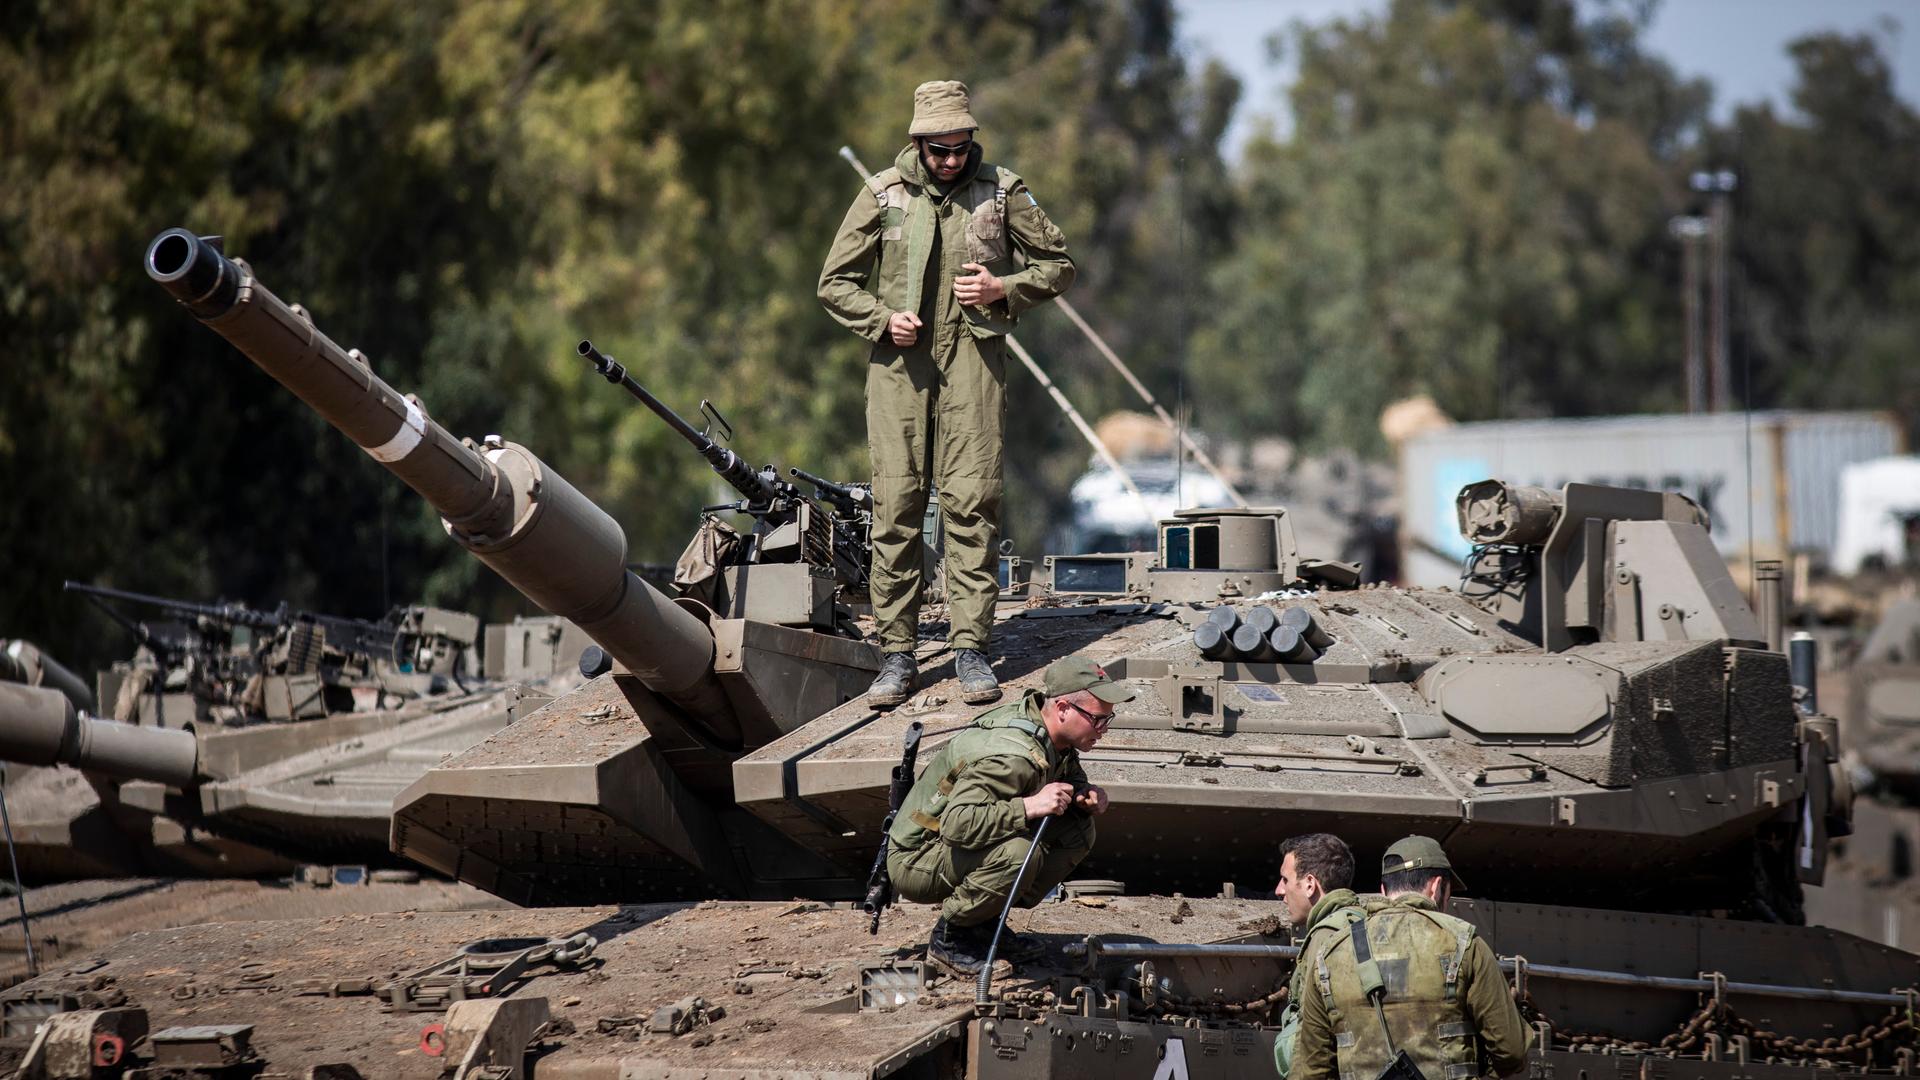 Israelische Soldaten bereiten Panzer nahe der Grenze zum Gazastreifen auf einen möglichen Einsatz vor.